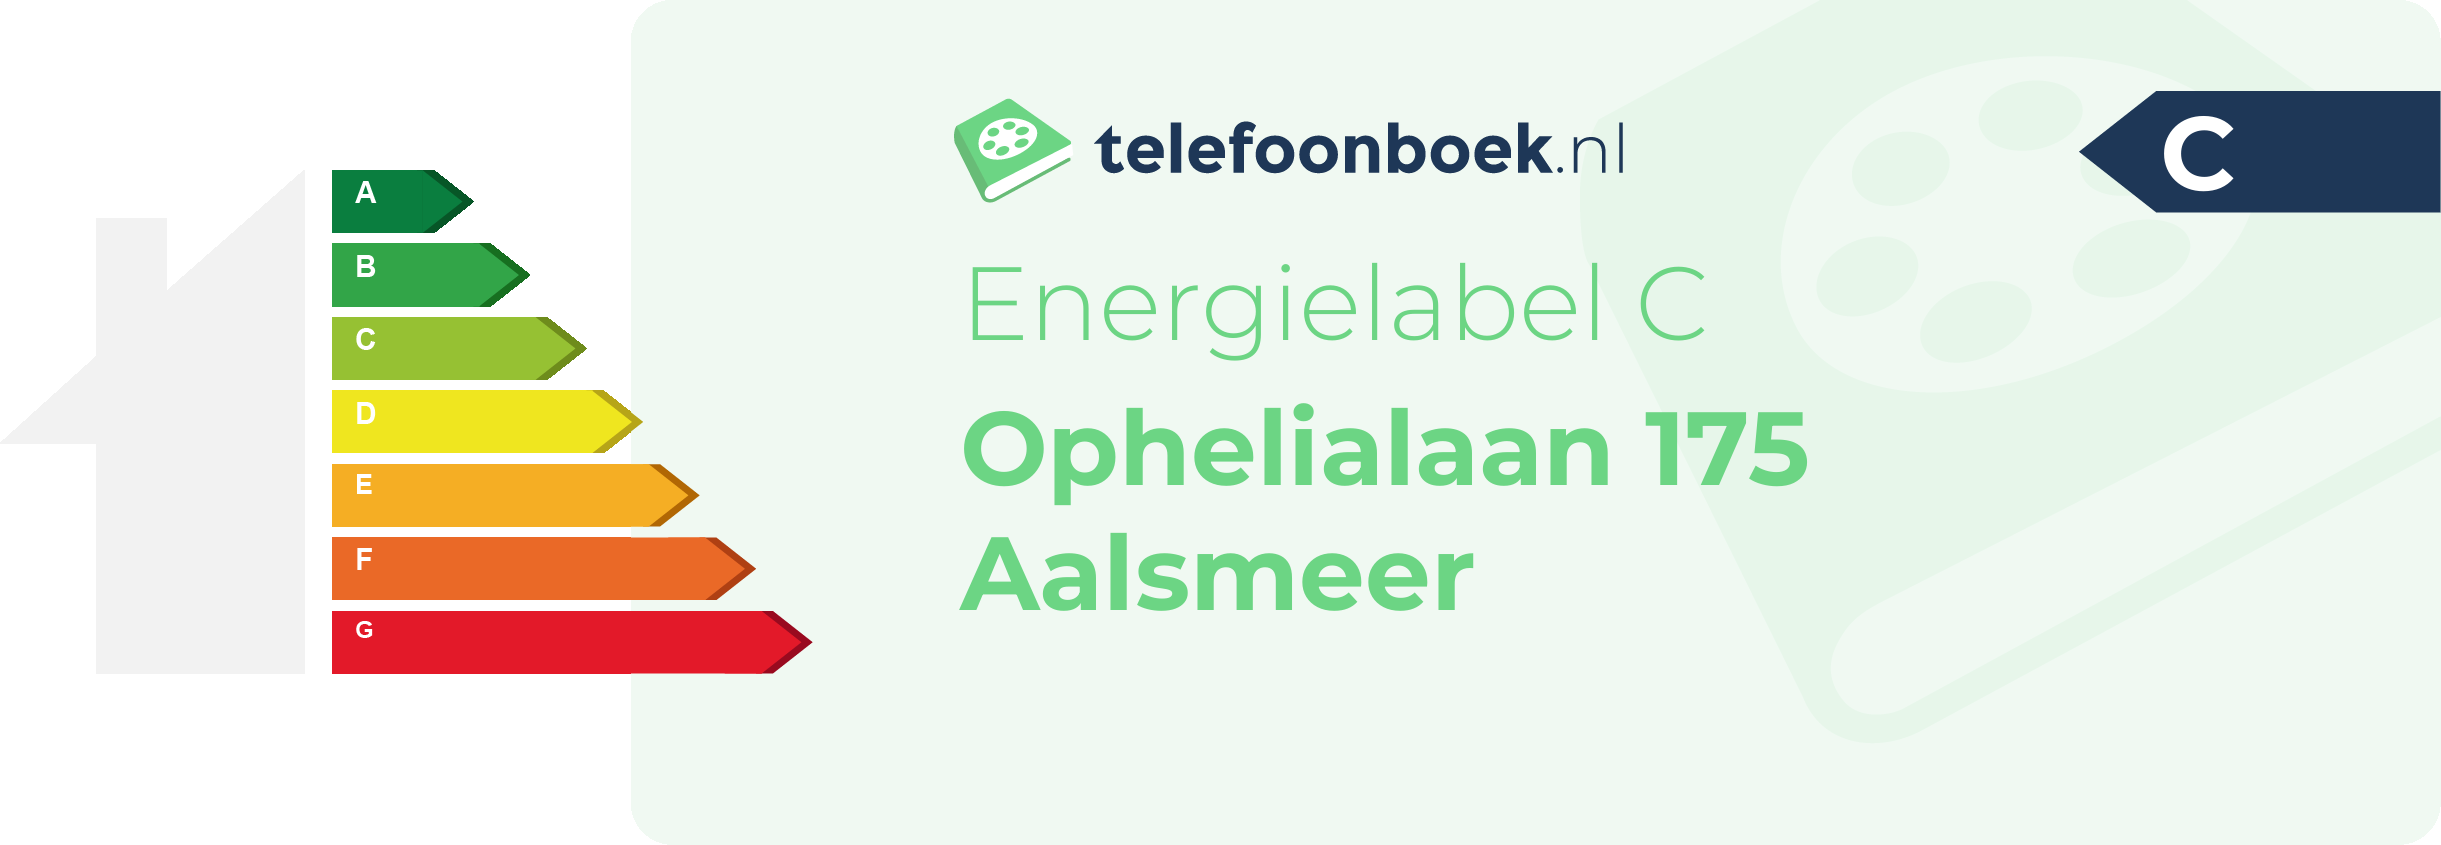 Energielabel Ophelialaan 175 Aalsmeer